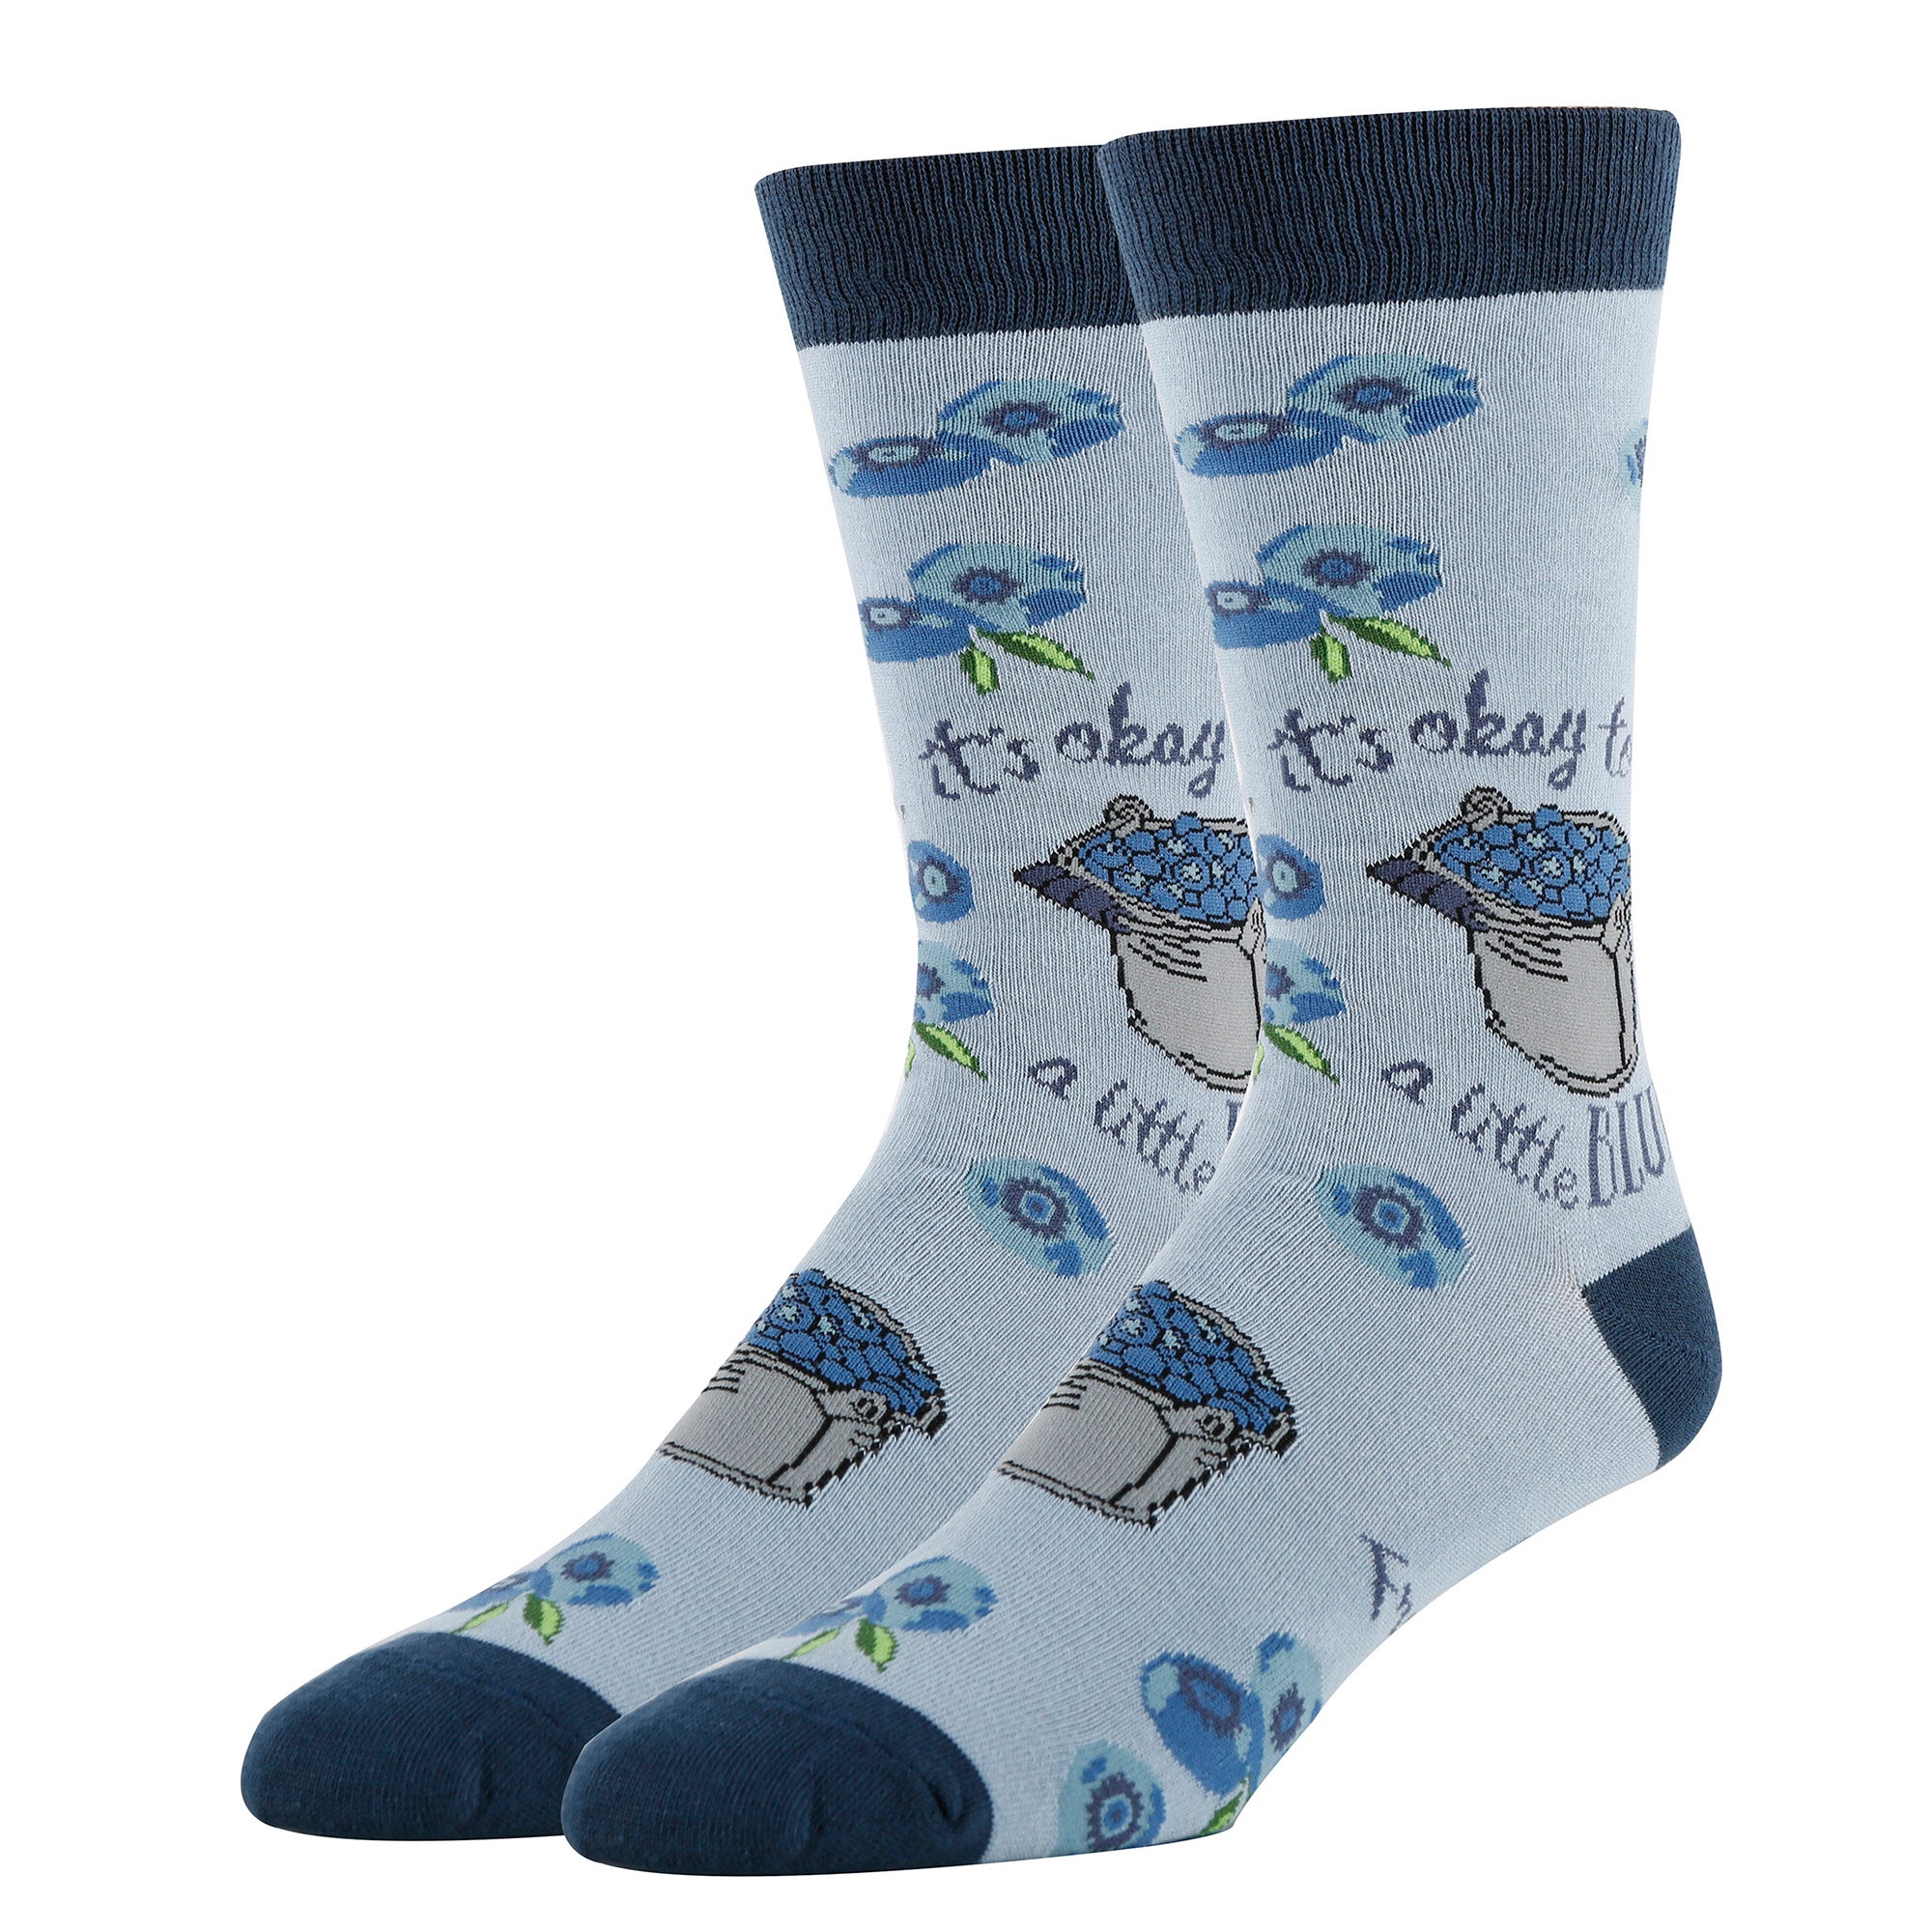 A Little Blue Socks | Funny Crew Socks for Men